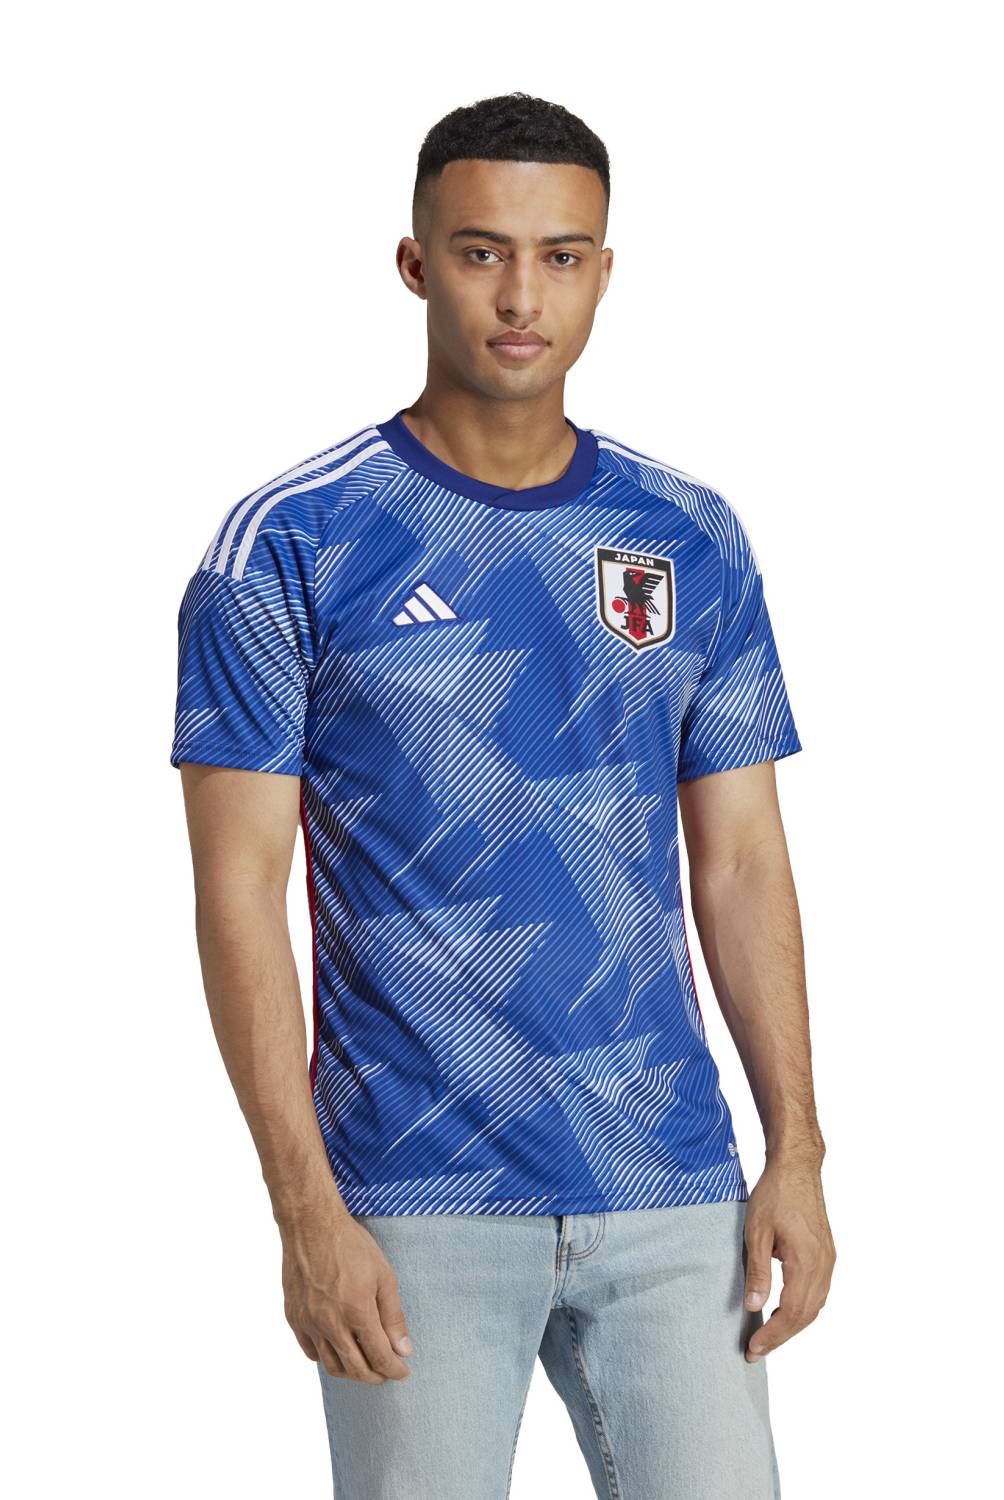 ADIDAS - Adidas Camiseta de Fútbol Japón Hombre